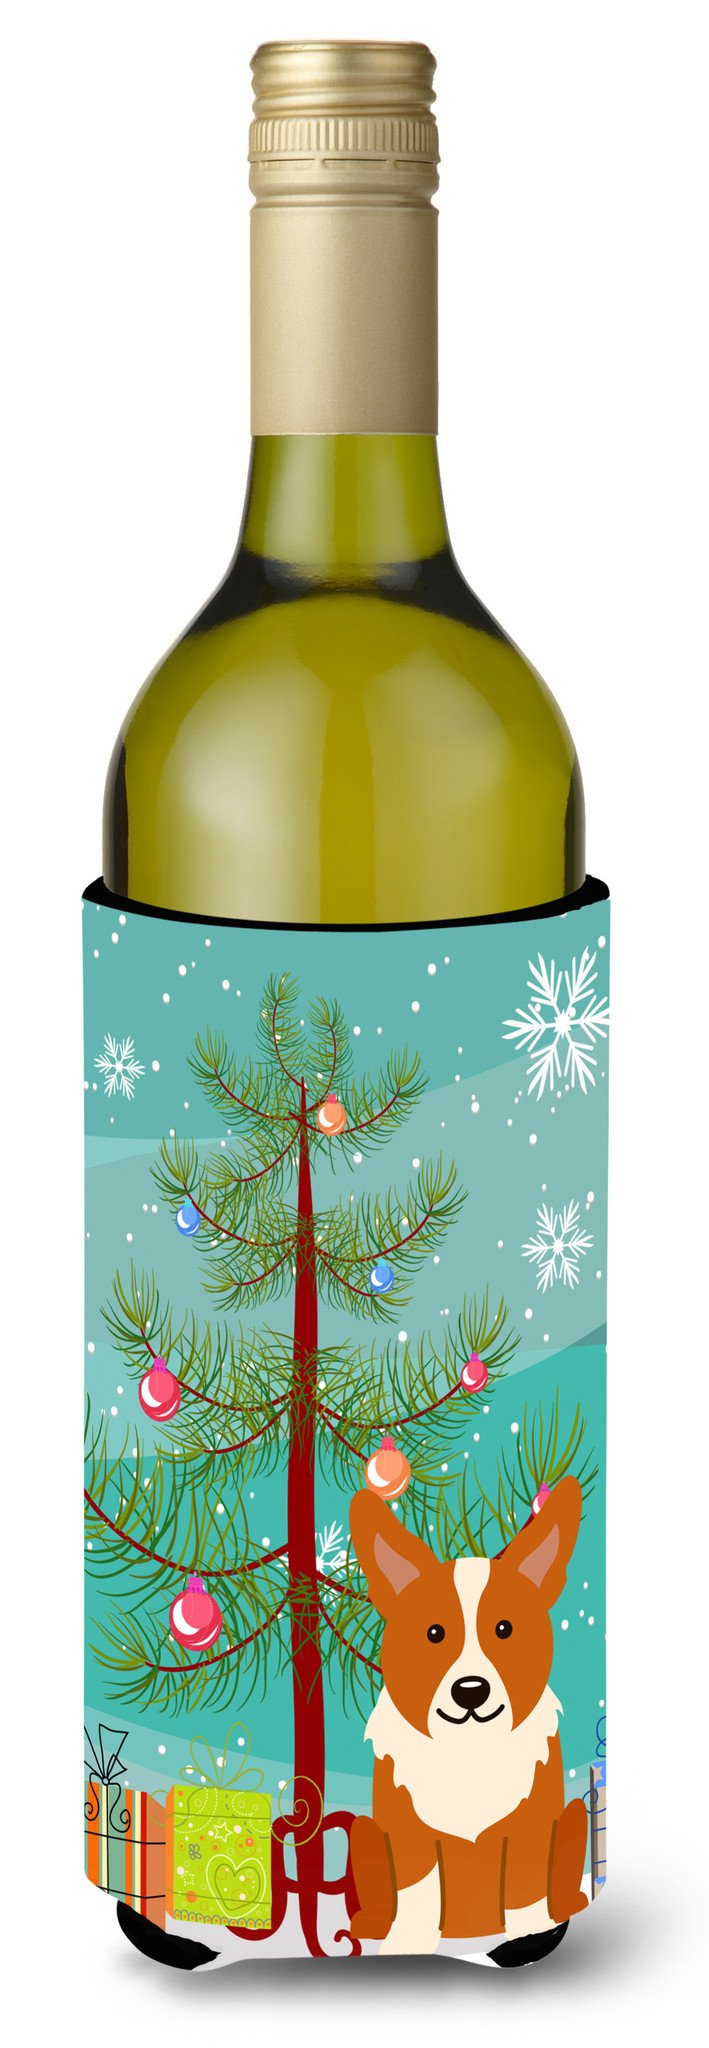 Merry Christmas Tree Corgi Wine Bottle Beverge Insulator Hugger BB4225LITERK by Caroline's Treasures